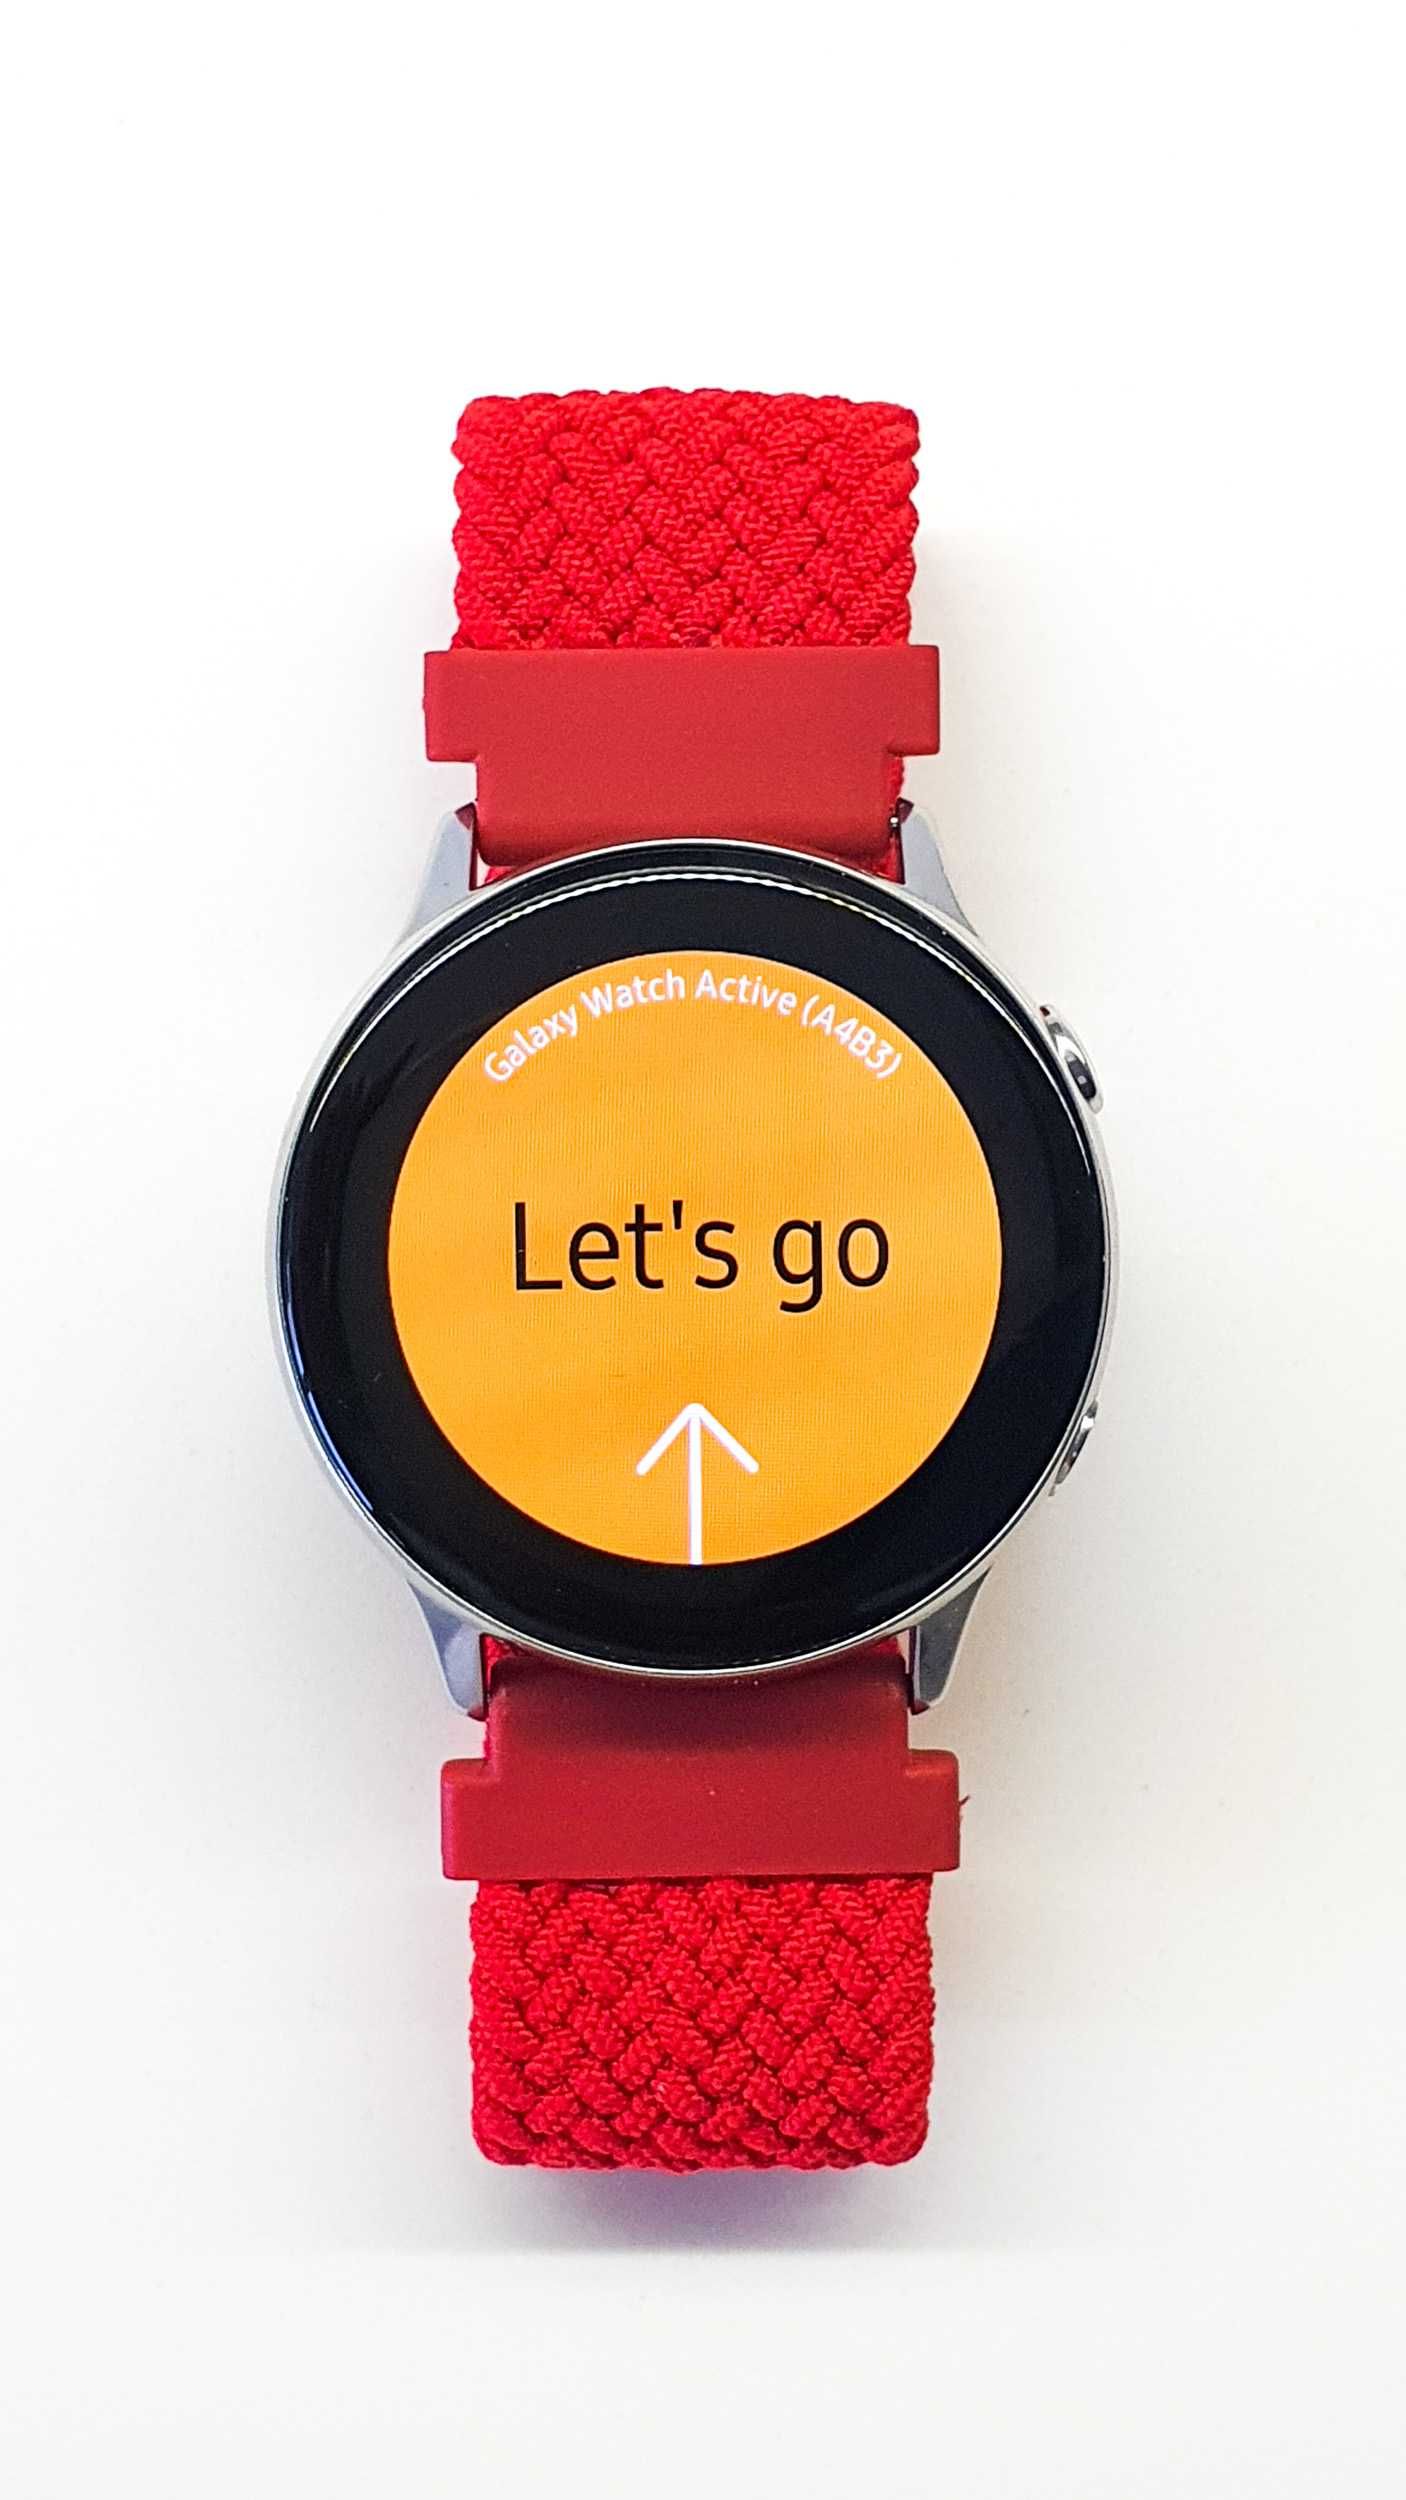 Relógio Samsung Smartwatch Galaxy watch active